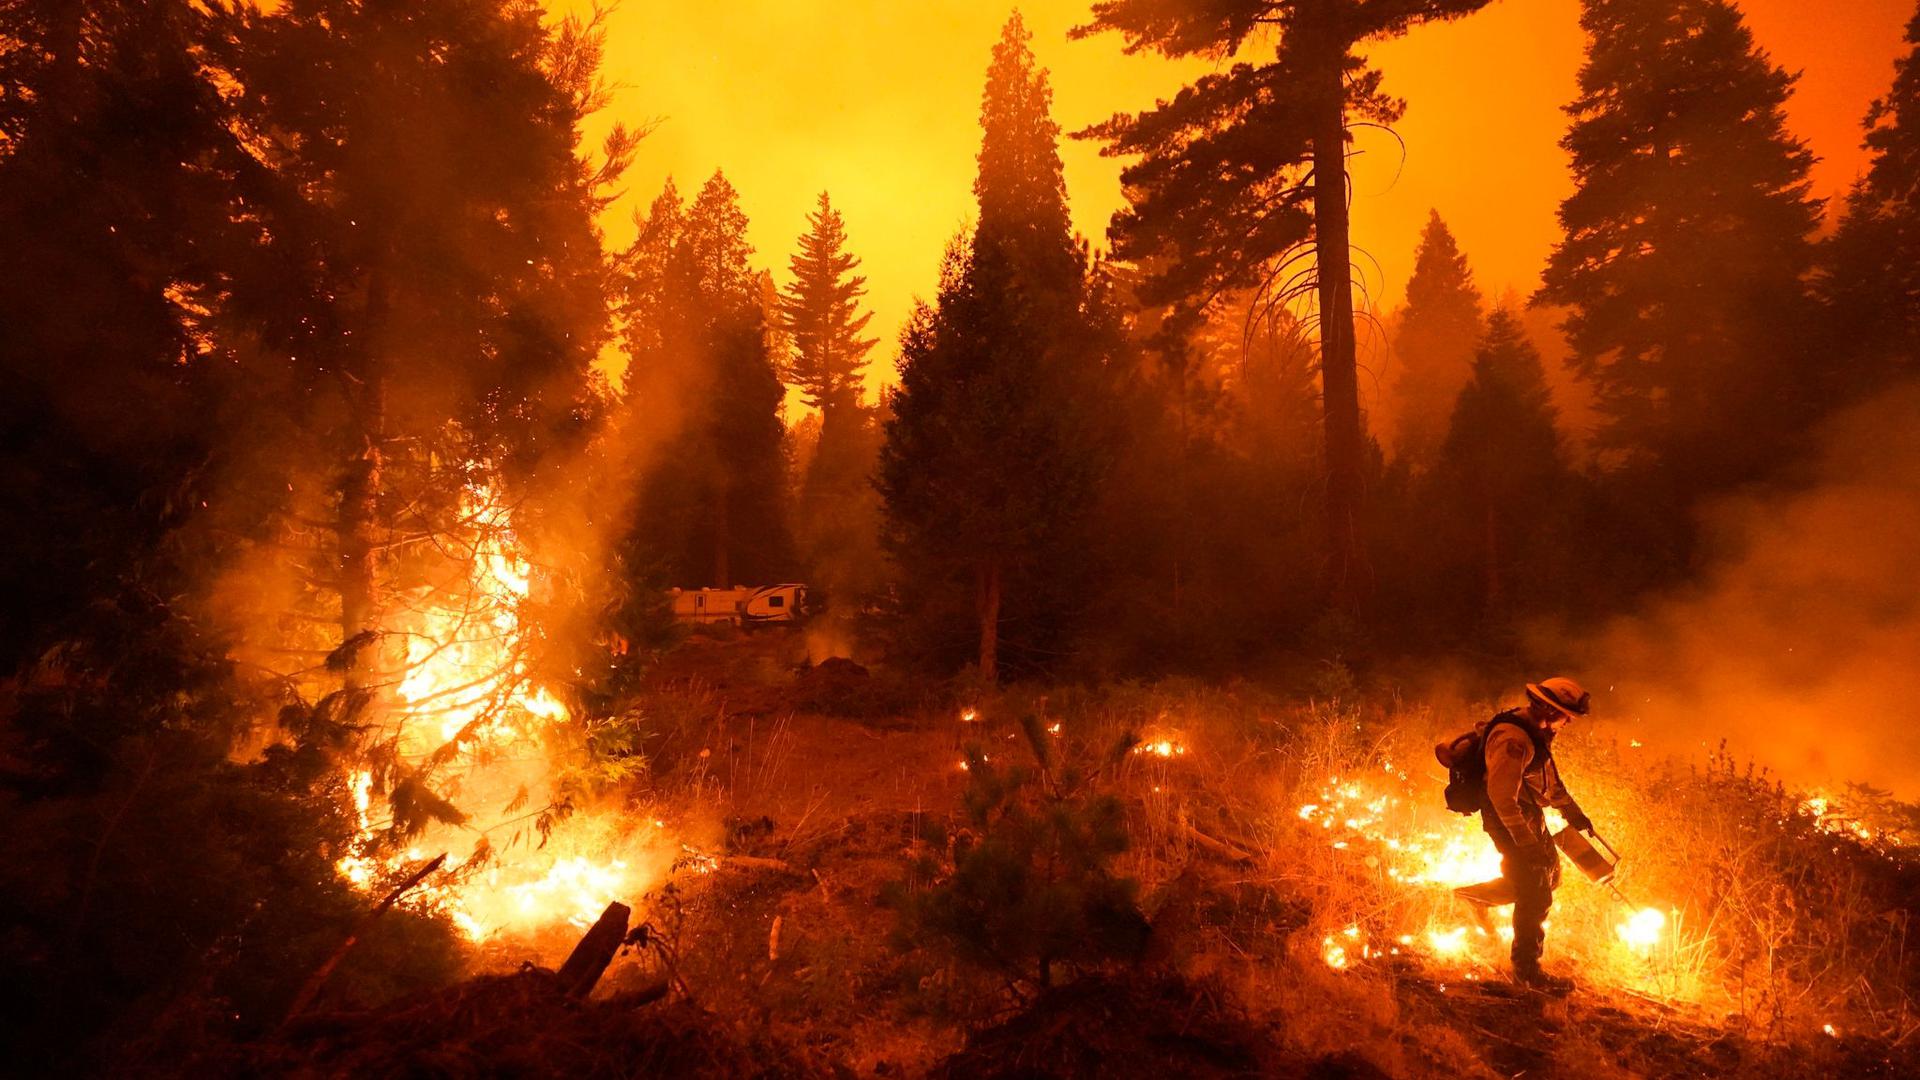 Ein Feuerwehrmann ist bei einem Waldbrand im Einsatz. Rasch um sich greifende Waldbrände haben Teile Kaliforniens in eine Feuerhölle verwandelt.